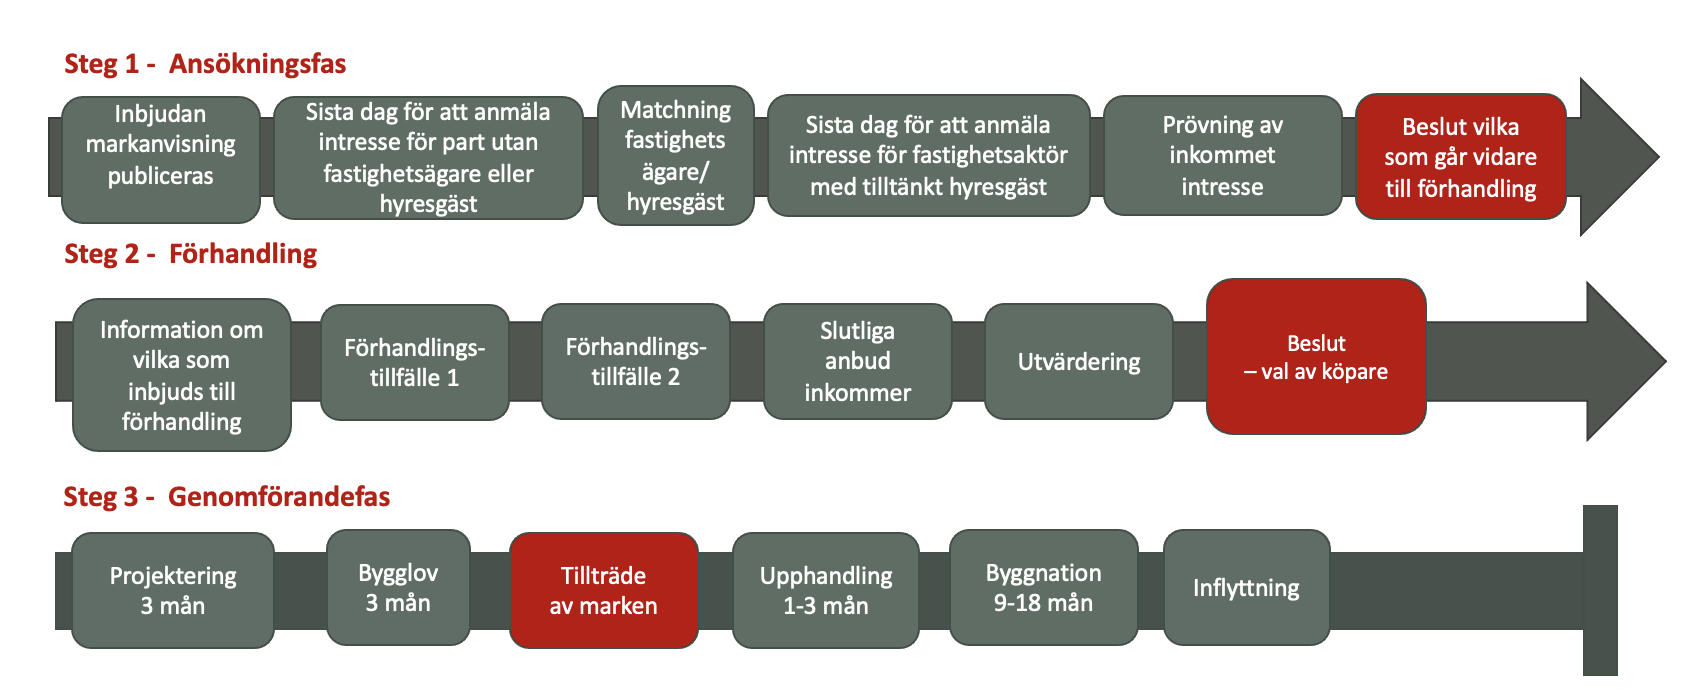 Karta över Tallenområdet i Falun met tomten för Nedre Gruvriset markerad.